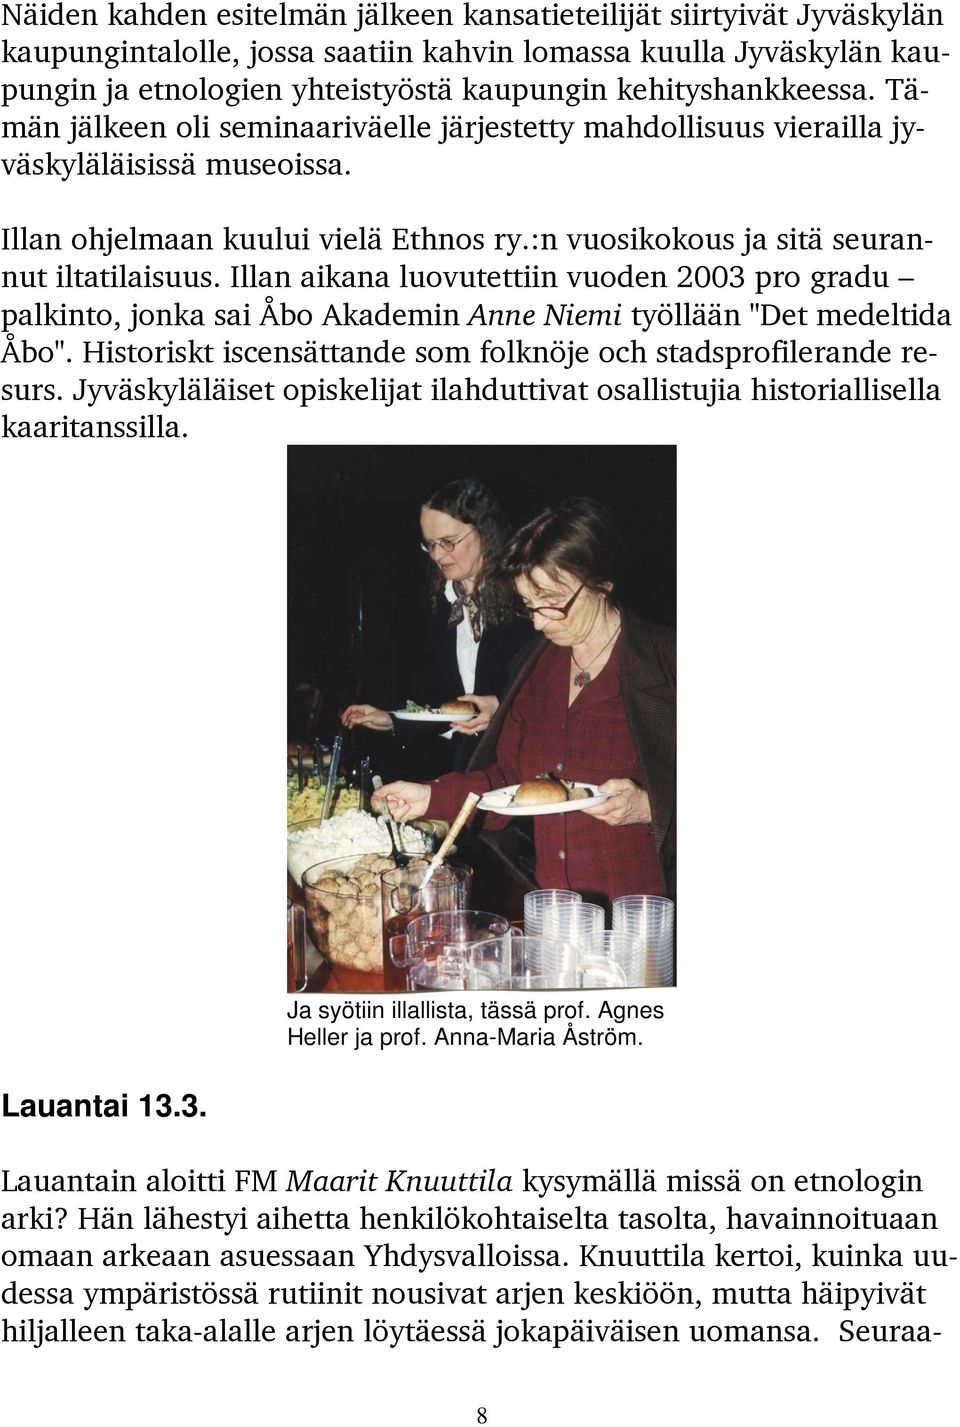 :n vuosikokous ja sitä seurannut iltatilaisuus. Illan aikana luovutettiin vuoden 2003 pro gradu palkinto, jonka sai Åbo Akademin Anne Niemi työllään "Det medeltida Åbo".